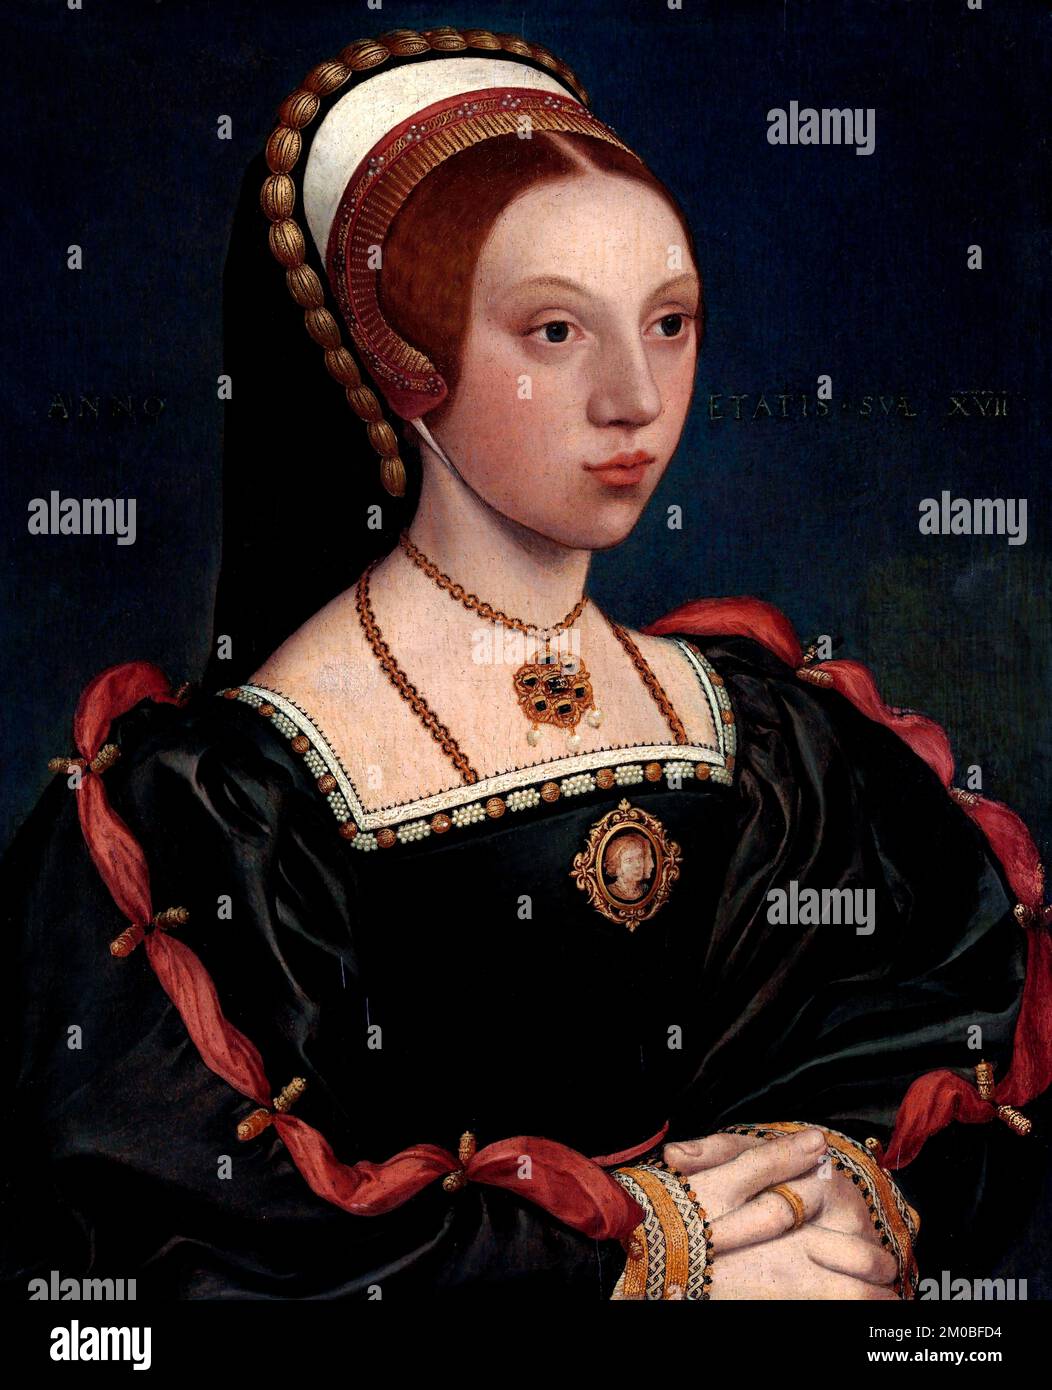 Portrait d'une jeune femme de Hans Holbein le jeune (1497/8-1543), huile et or sur chêne, vers 1540-45 Banque D'Images